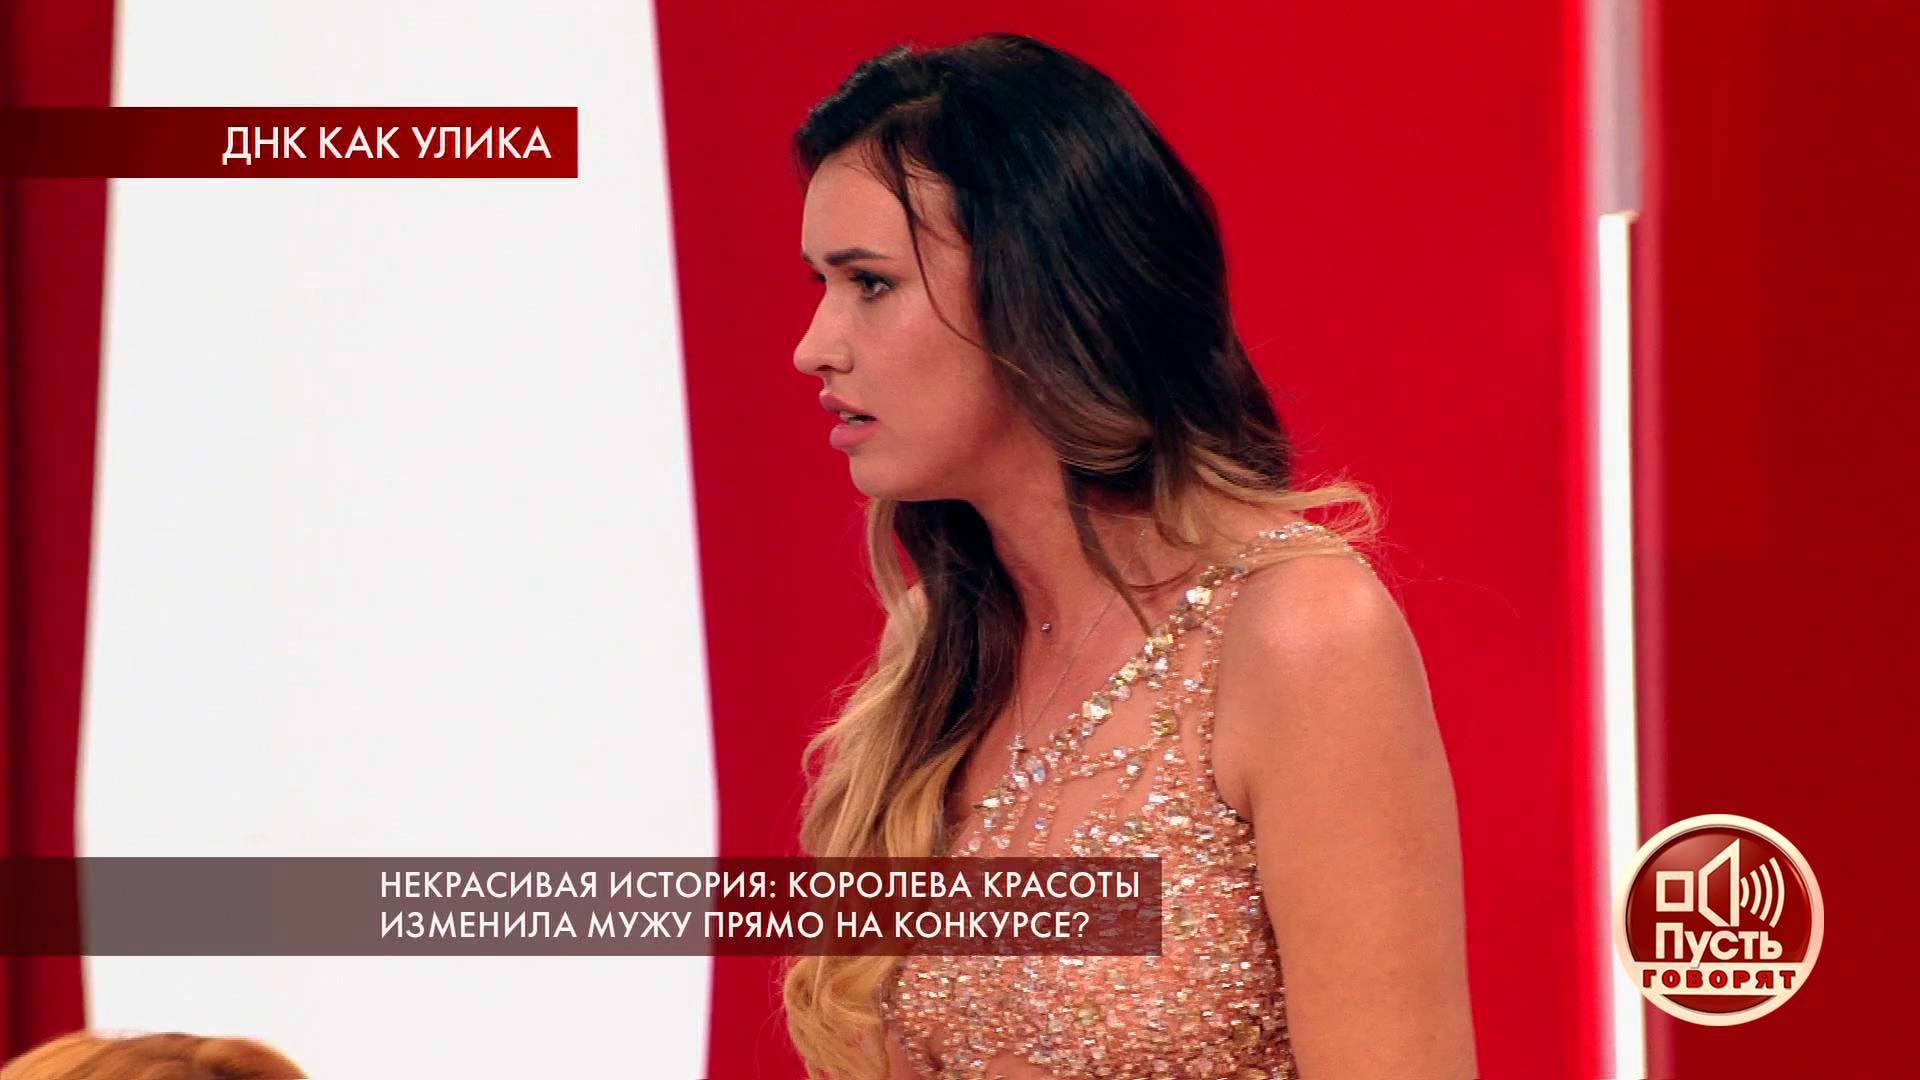 ТВ-шоу «Пусть говорят» 2022: актеры, время выхода и описание на Первом  канале / Channel One Russia